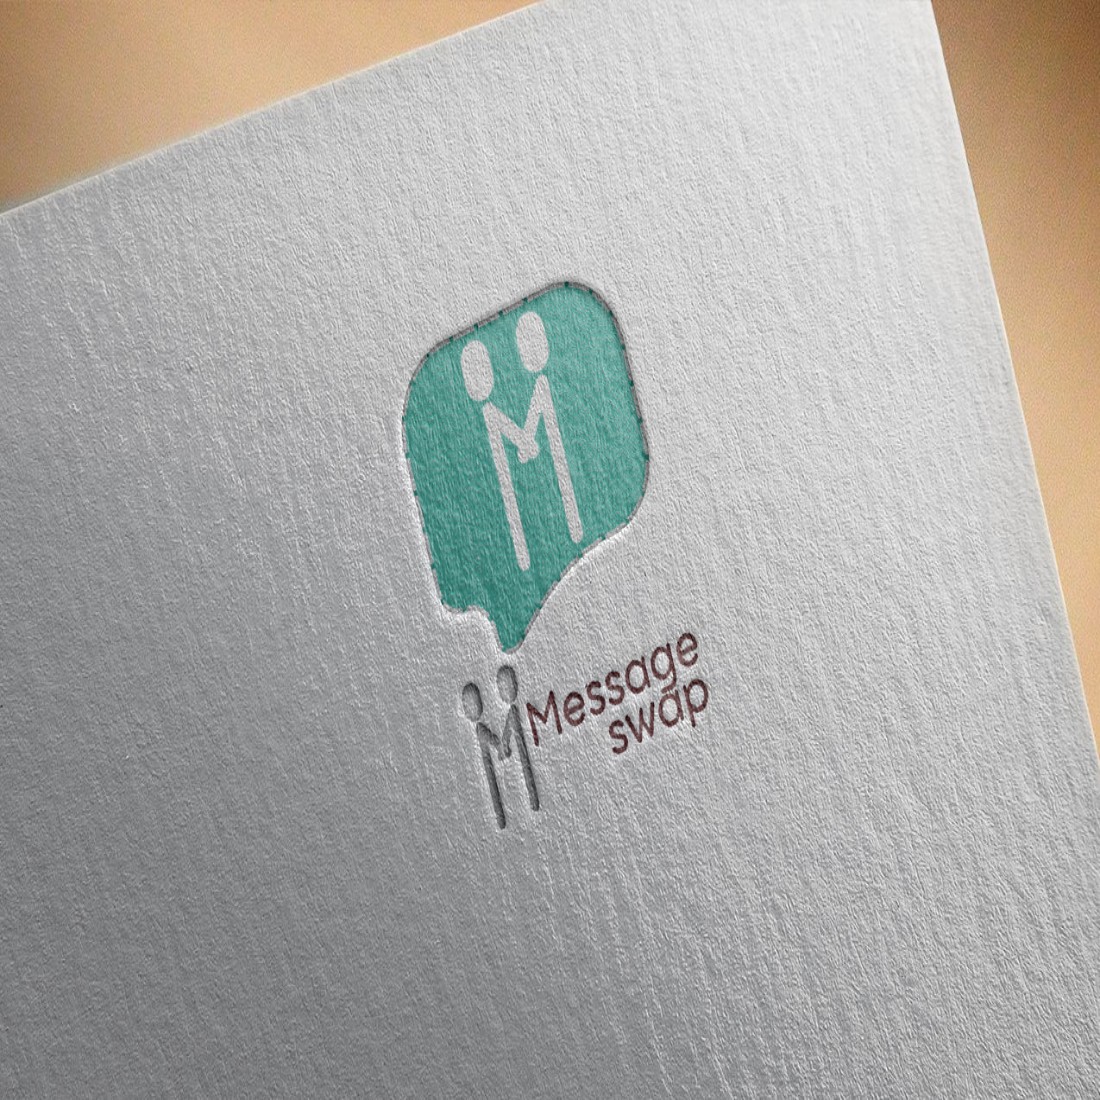 Message Swap App Logo Mockup Design cover image.